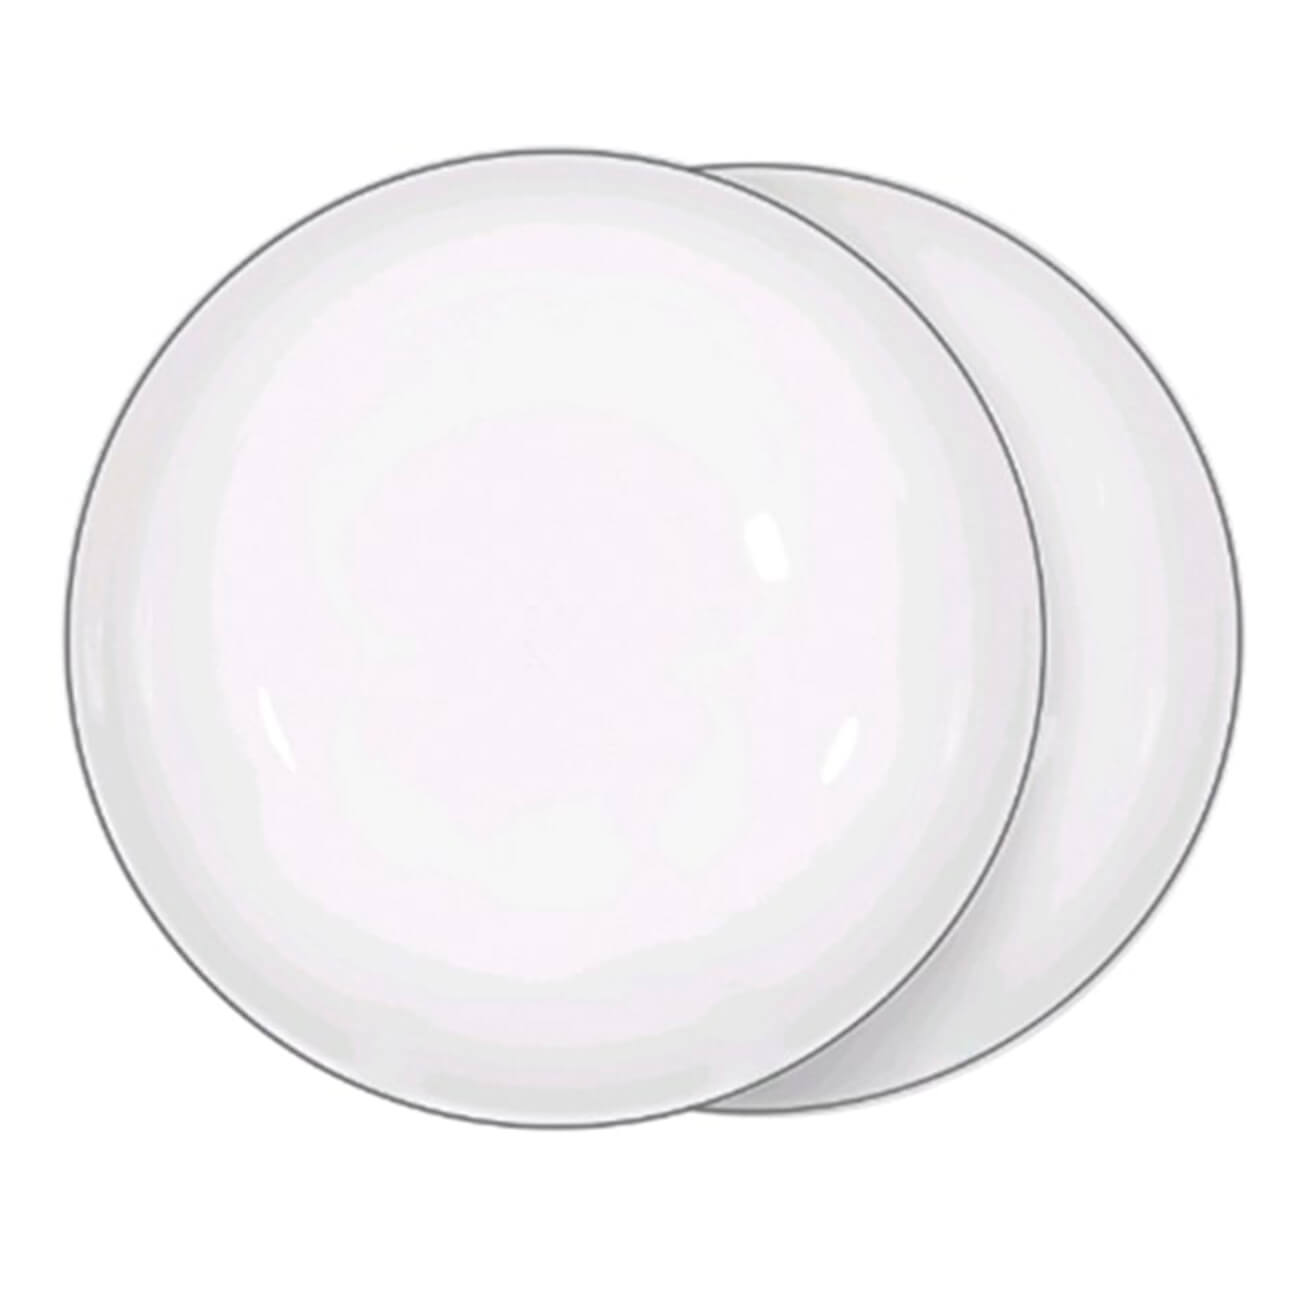 Тарелка суповая, 20х5 см, 2 шт, фарфор F, белая, Ideal silver тарелка суповая easy life amalfi 18 см